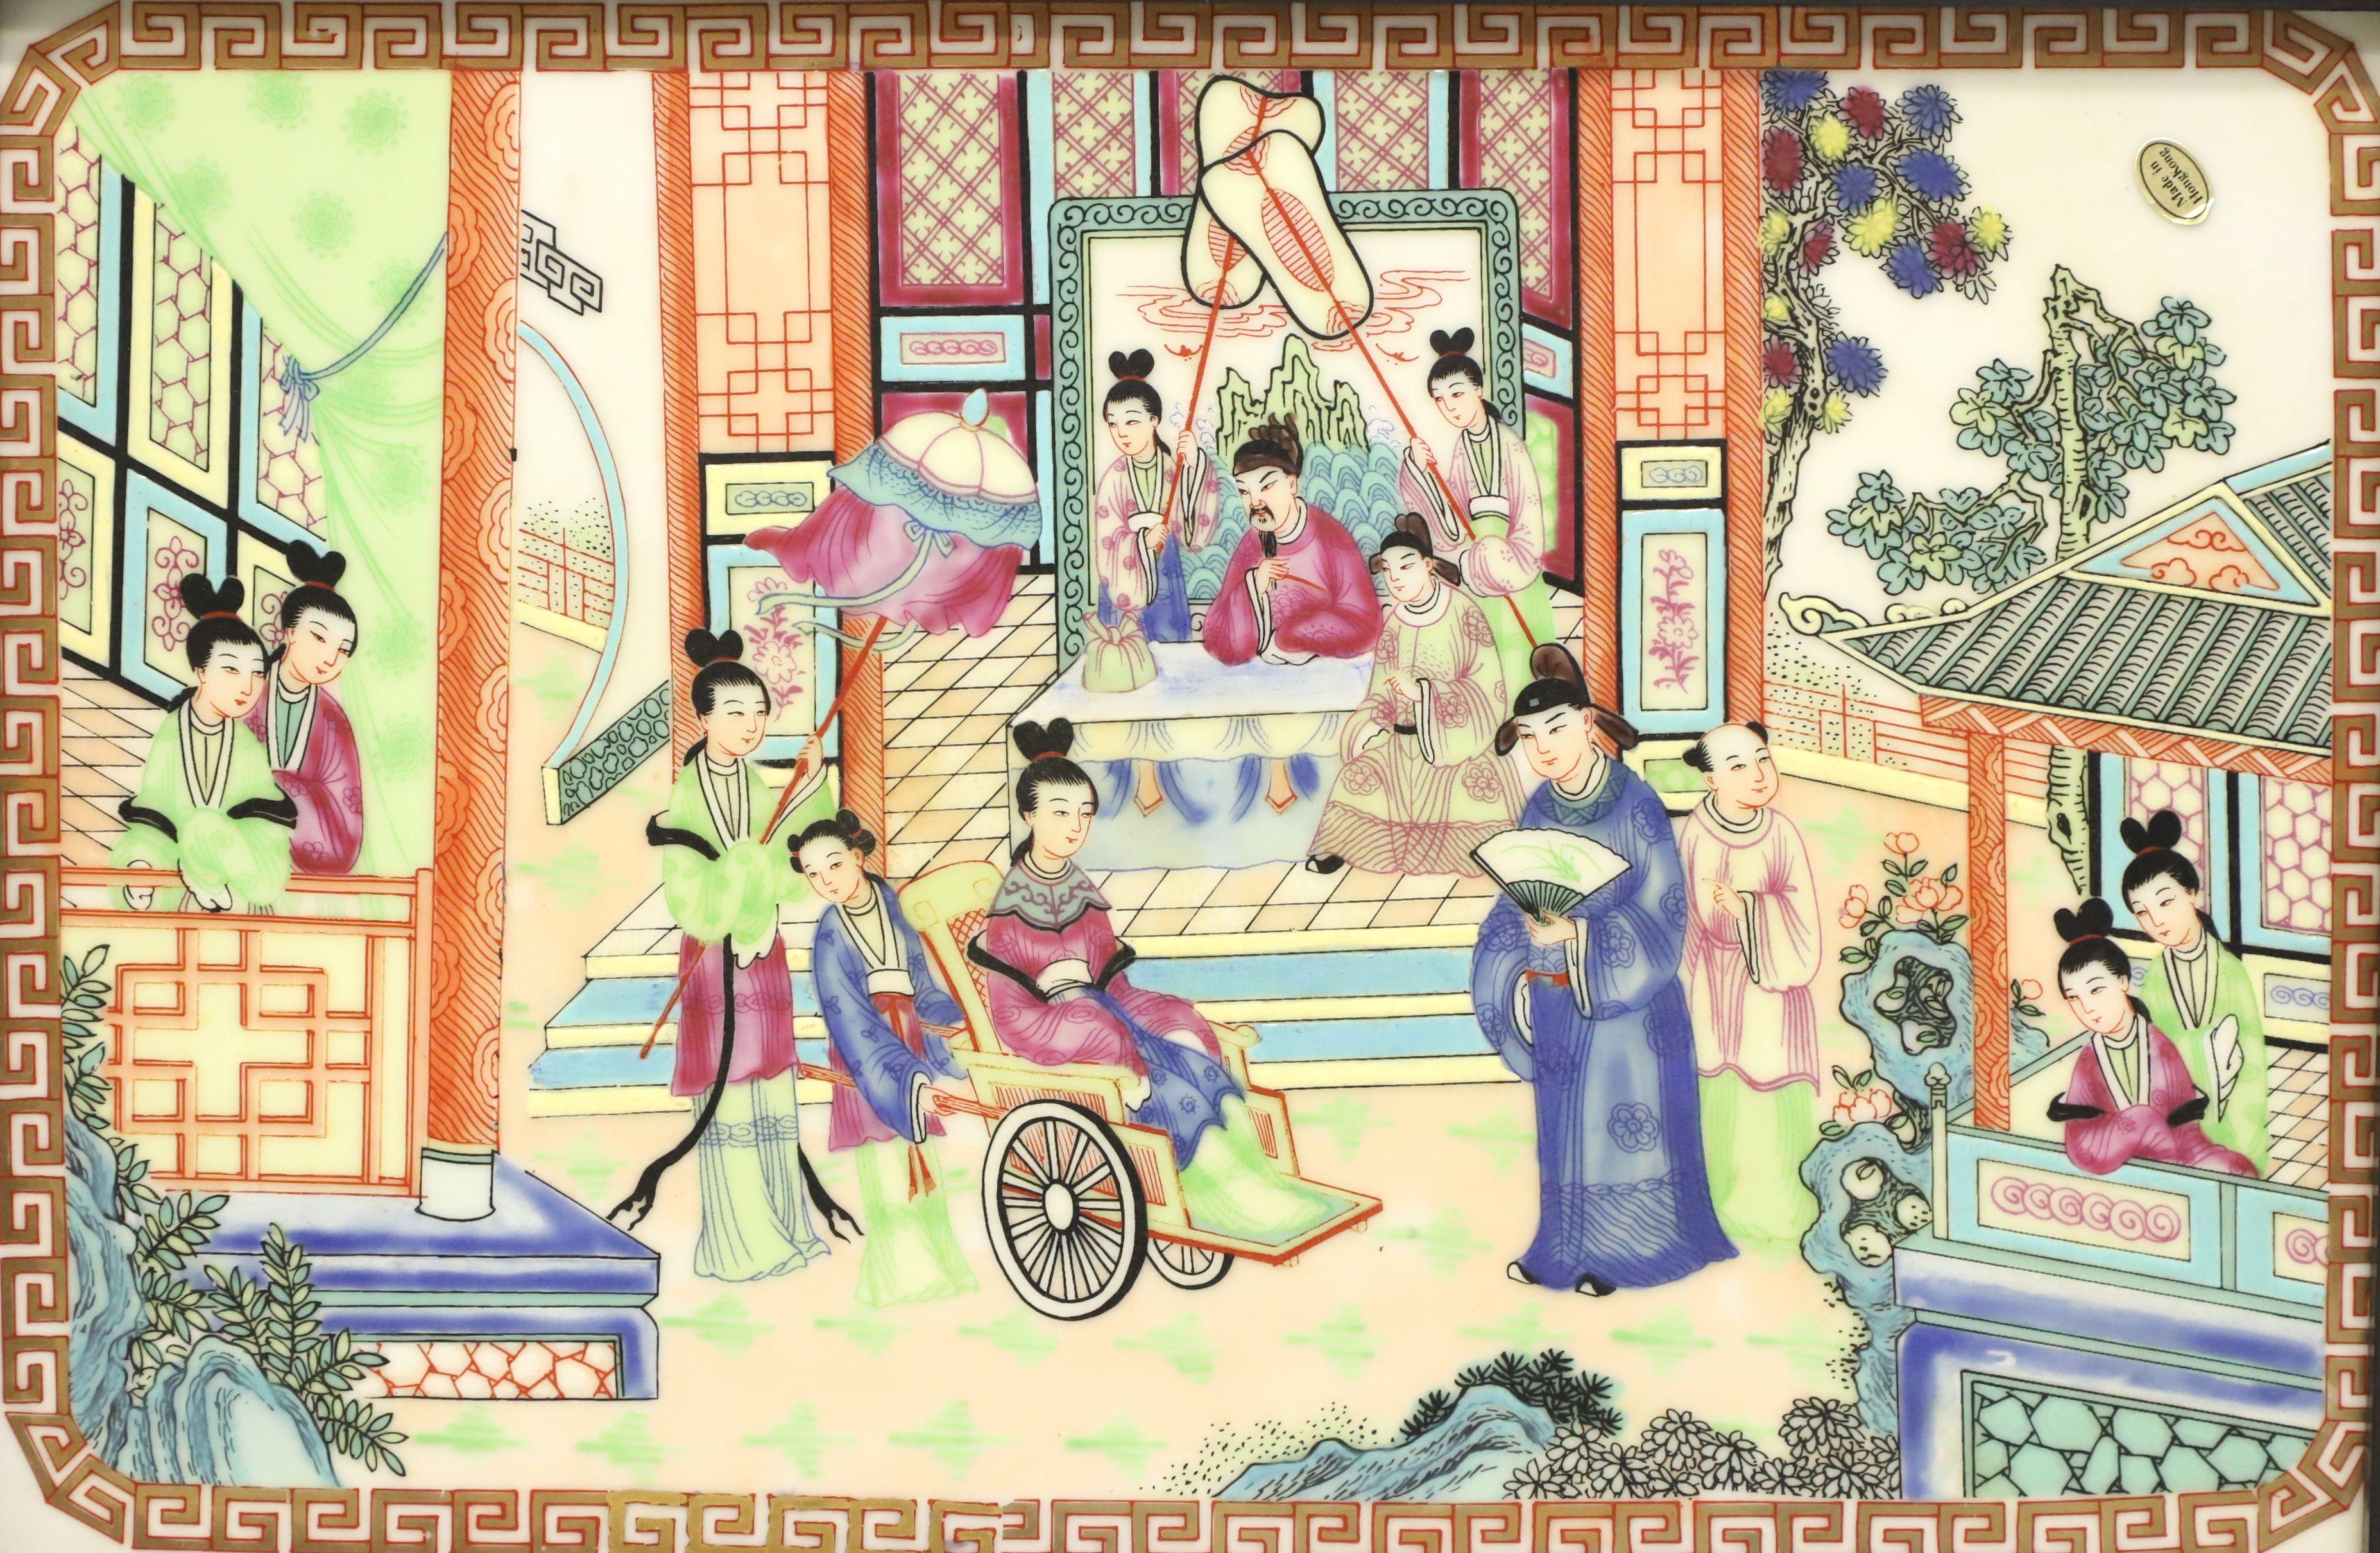 Feines Porzellan, handbemalt mit einer mehrfarbigen Szene eines japanischen Dorfes, präsentiert in schwarz lackierten Holzrahmen mit Chinoiserie-Messingaufhängern. Hergestellt in Hongkong, Mitte des 20. Jahrhunderts.

Maße: 23.5w 1.25d 20h, Wiegt